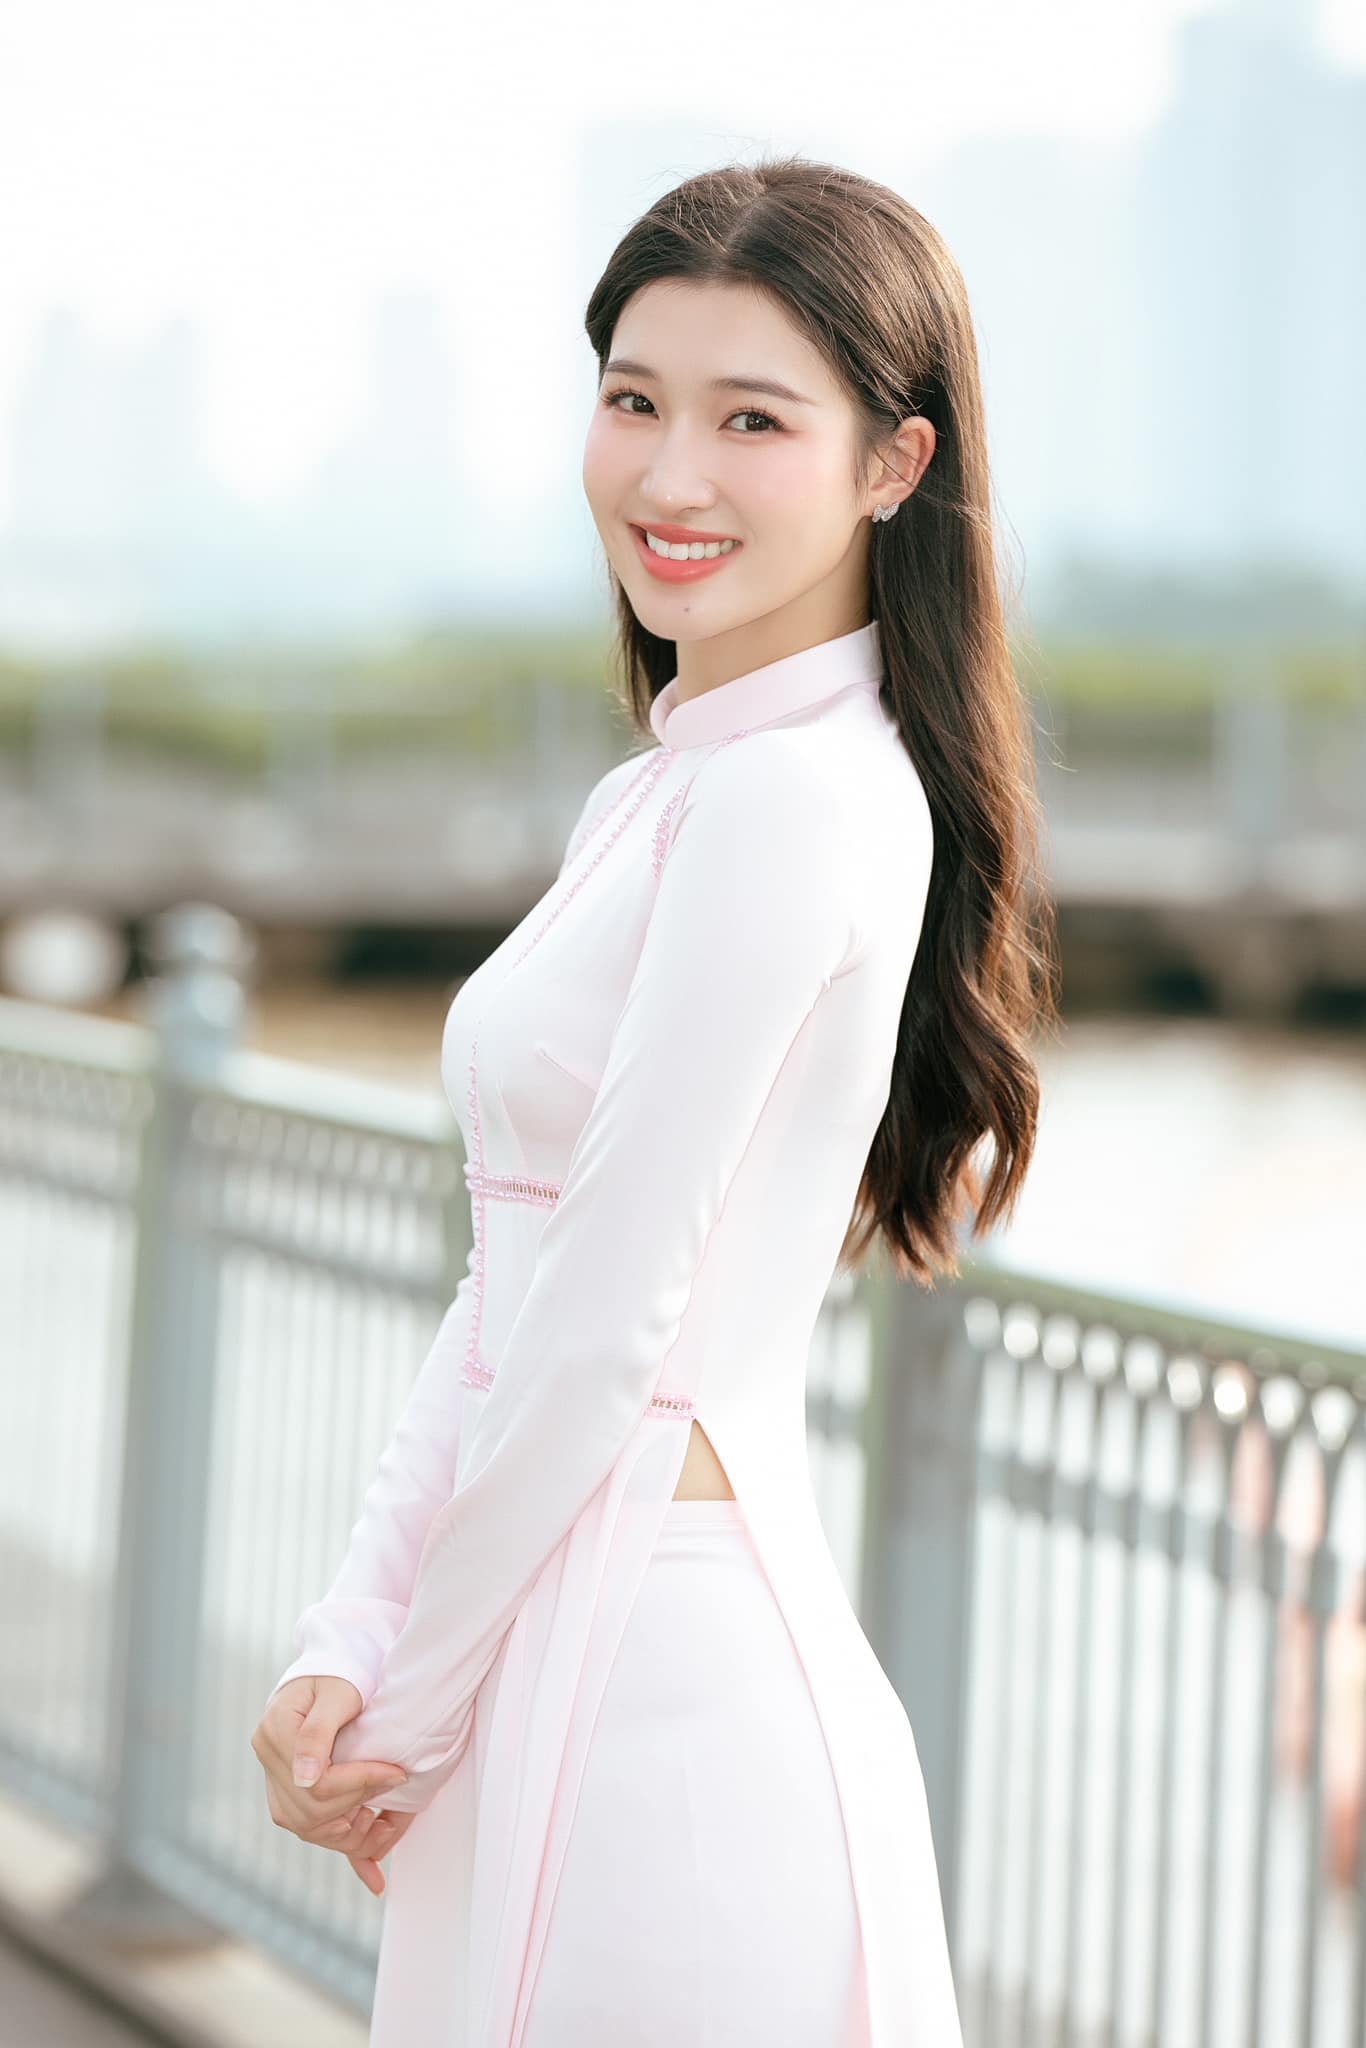 Á hậu Phương Nhi được chuyên trang quốc tế dự đoán bất ngờ về thành tích tại Miss International - Ảnh 3.